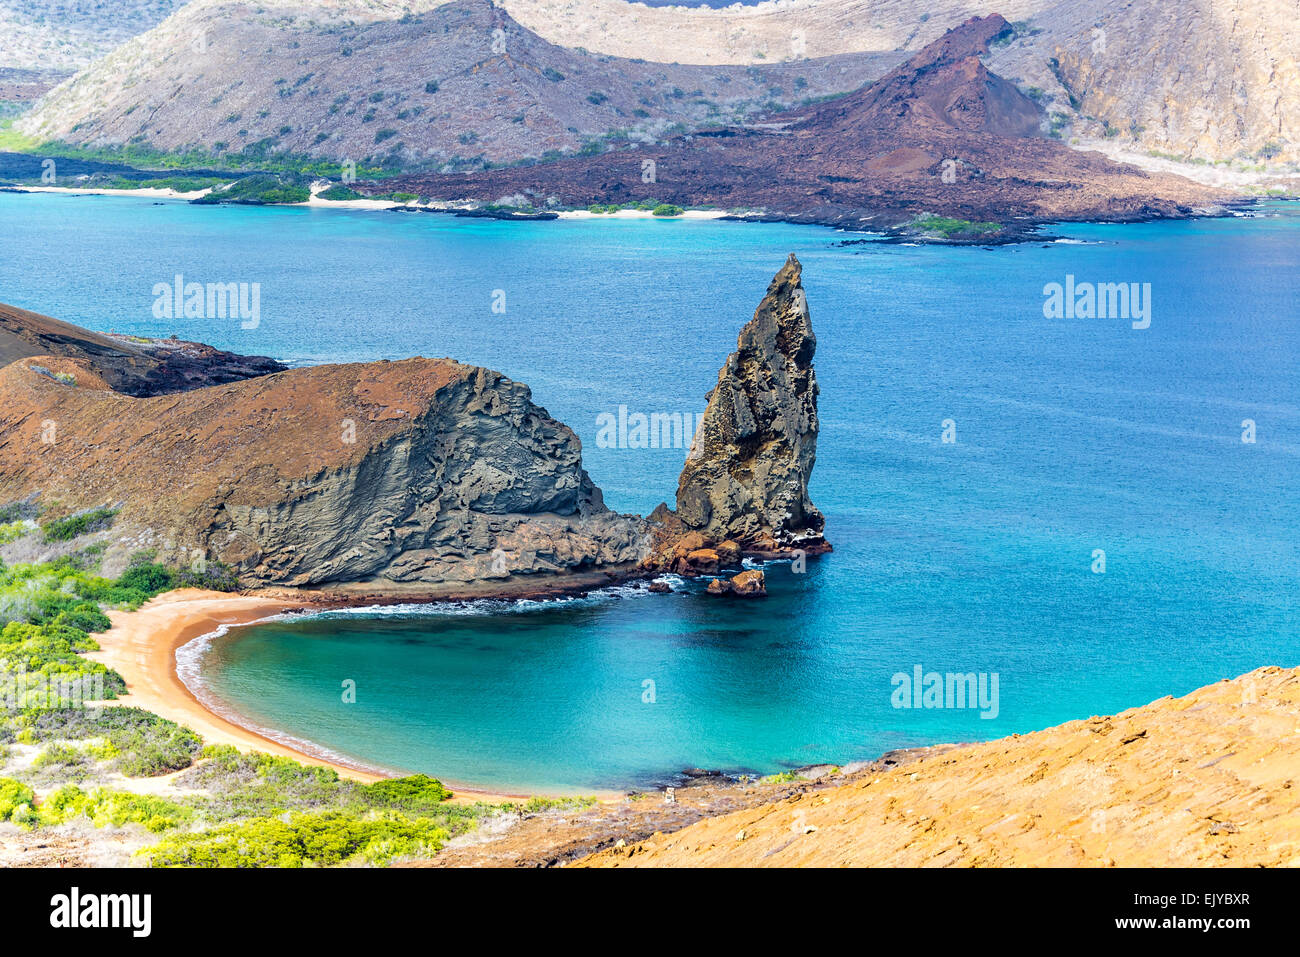 View of Pinnacle Rock on Bartolome Island in the Galapagos Island in Ecuador Stock Photo